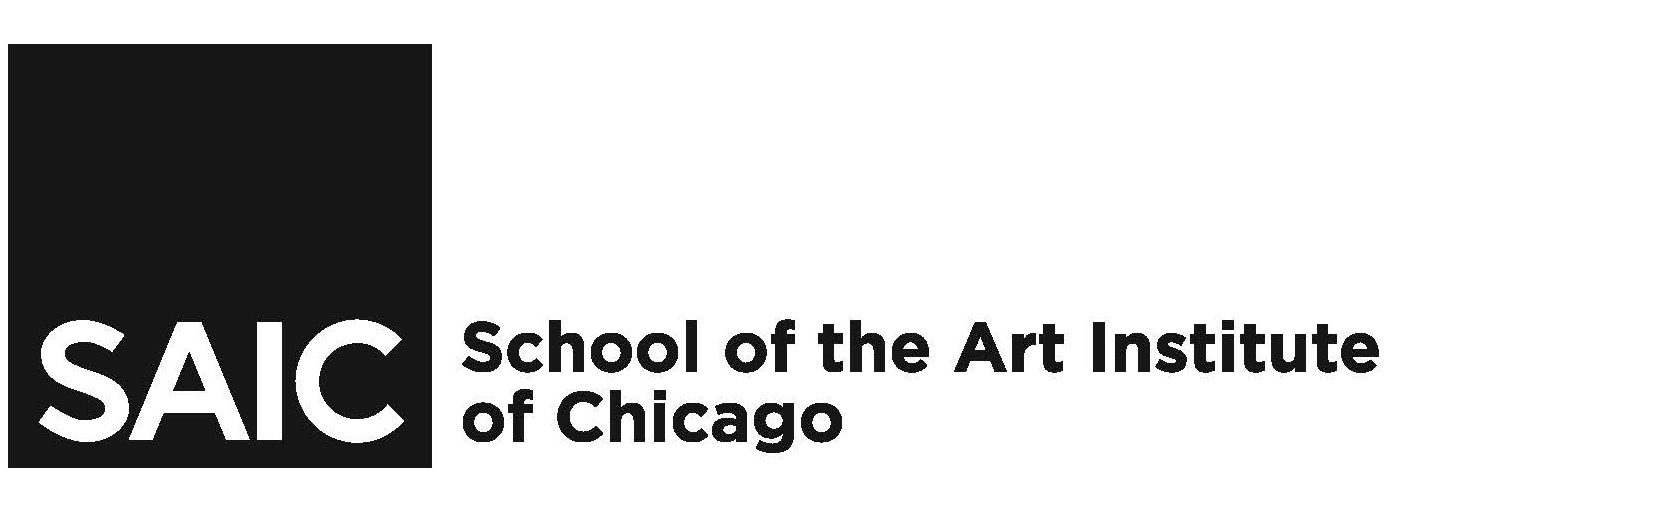 School of the Art Institute of Chicago logo